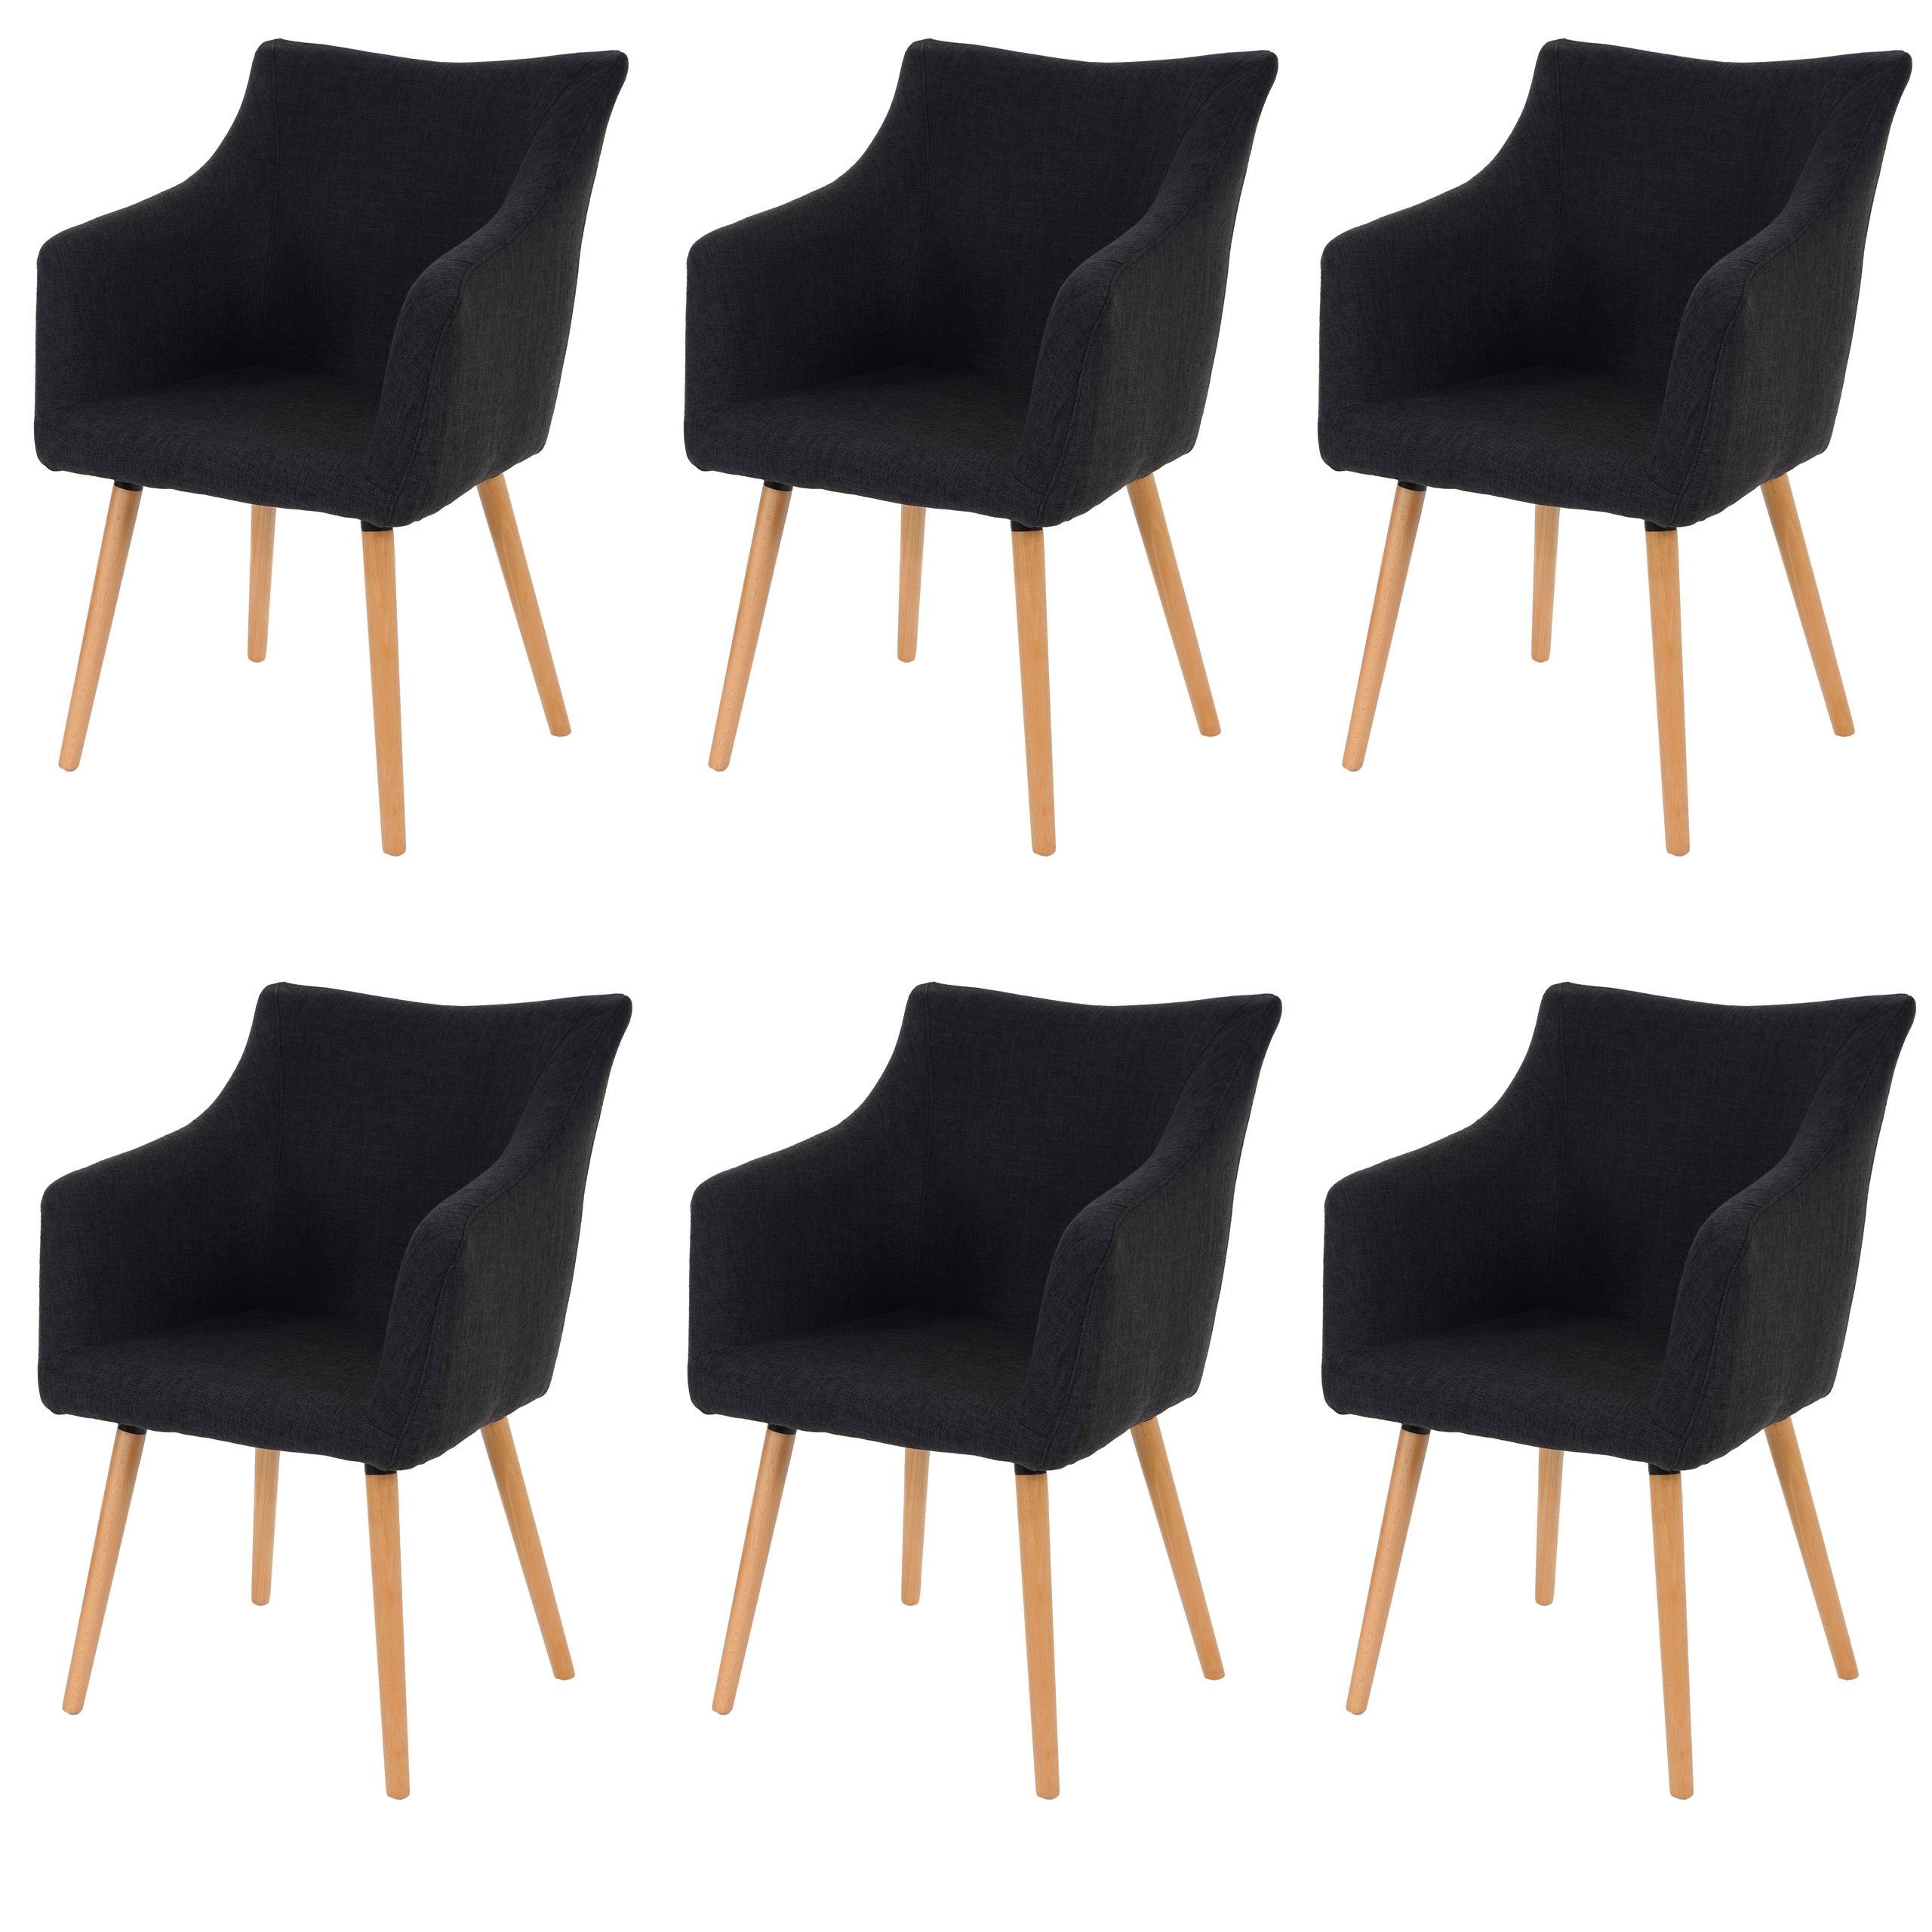 MCW Esszimmerstuhl Vaasa T382-6 (Set, 6 St), 6er-Set, Kunststoffuntersatz unter den Füßen, Vielseitig einsetzbar dunkelgrau | dunkelgrau | Stühle